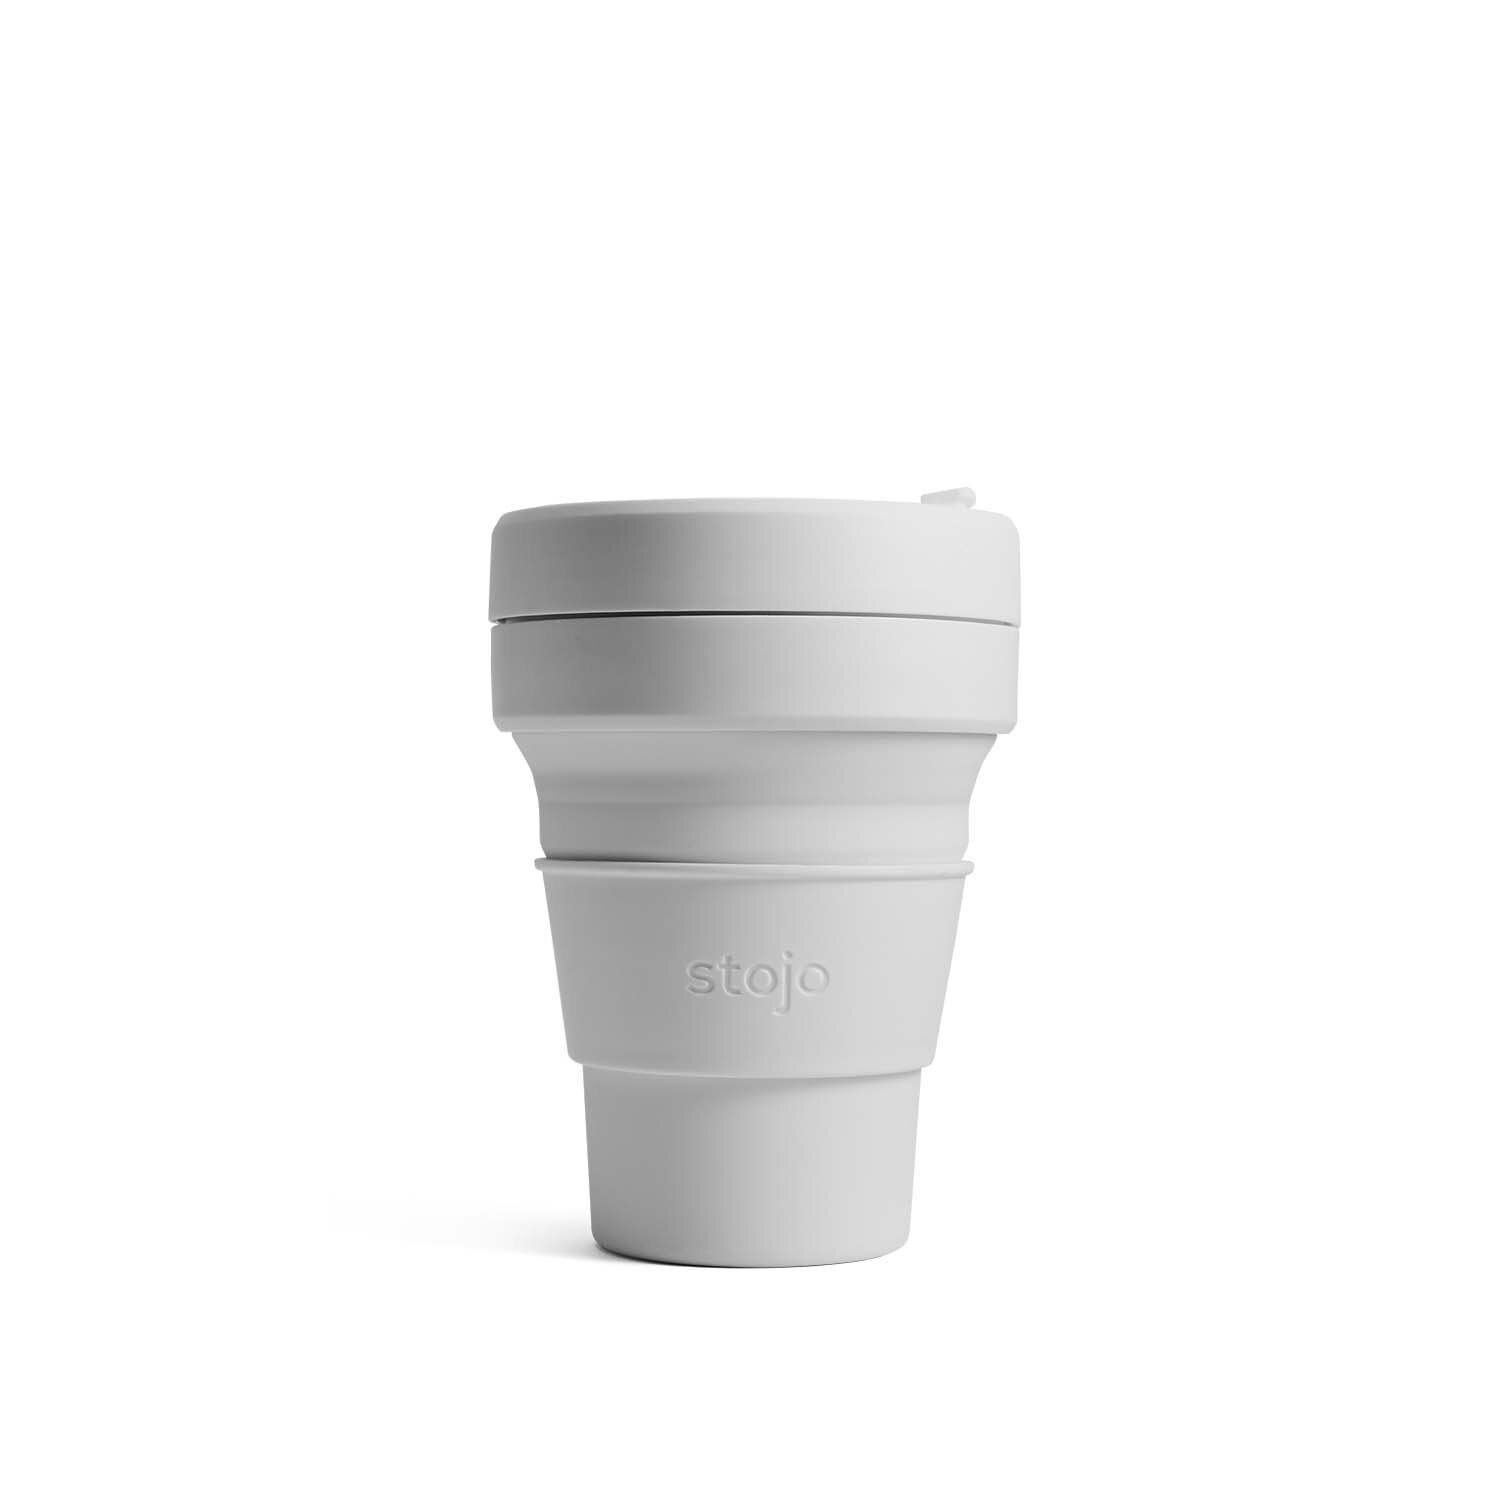  Pocket Cup - 12,7 cm déplié 5,1 cm plié - 355 ml -  S1-CSH 